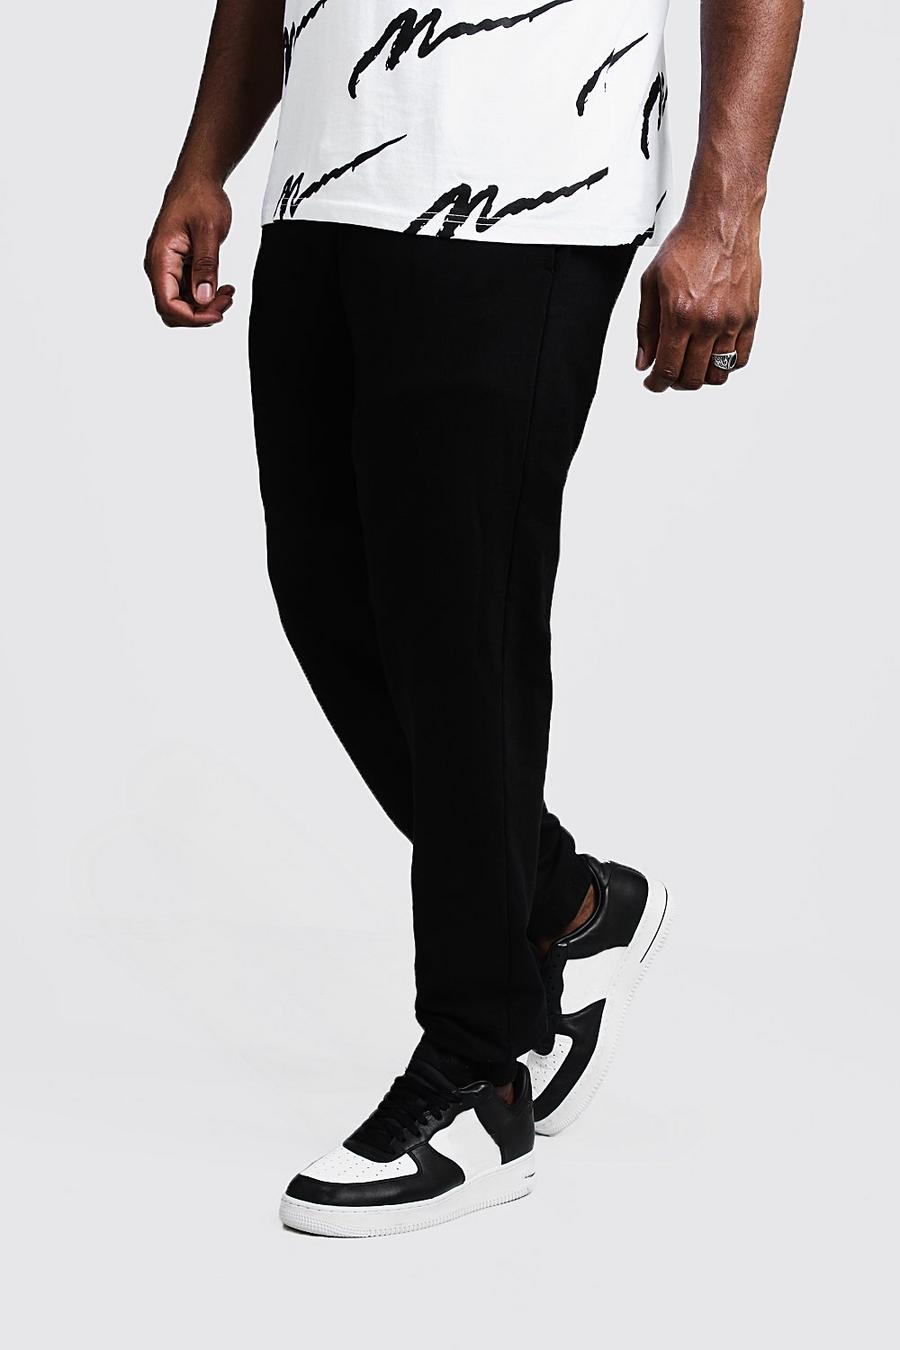 שחור מכנסי ריצה בייסיק בגזרת סקיני לגברים גדולים וגבוהים image number 1